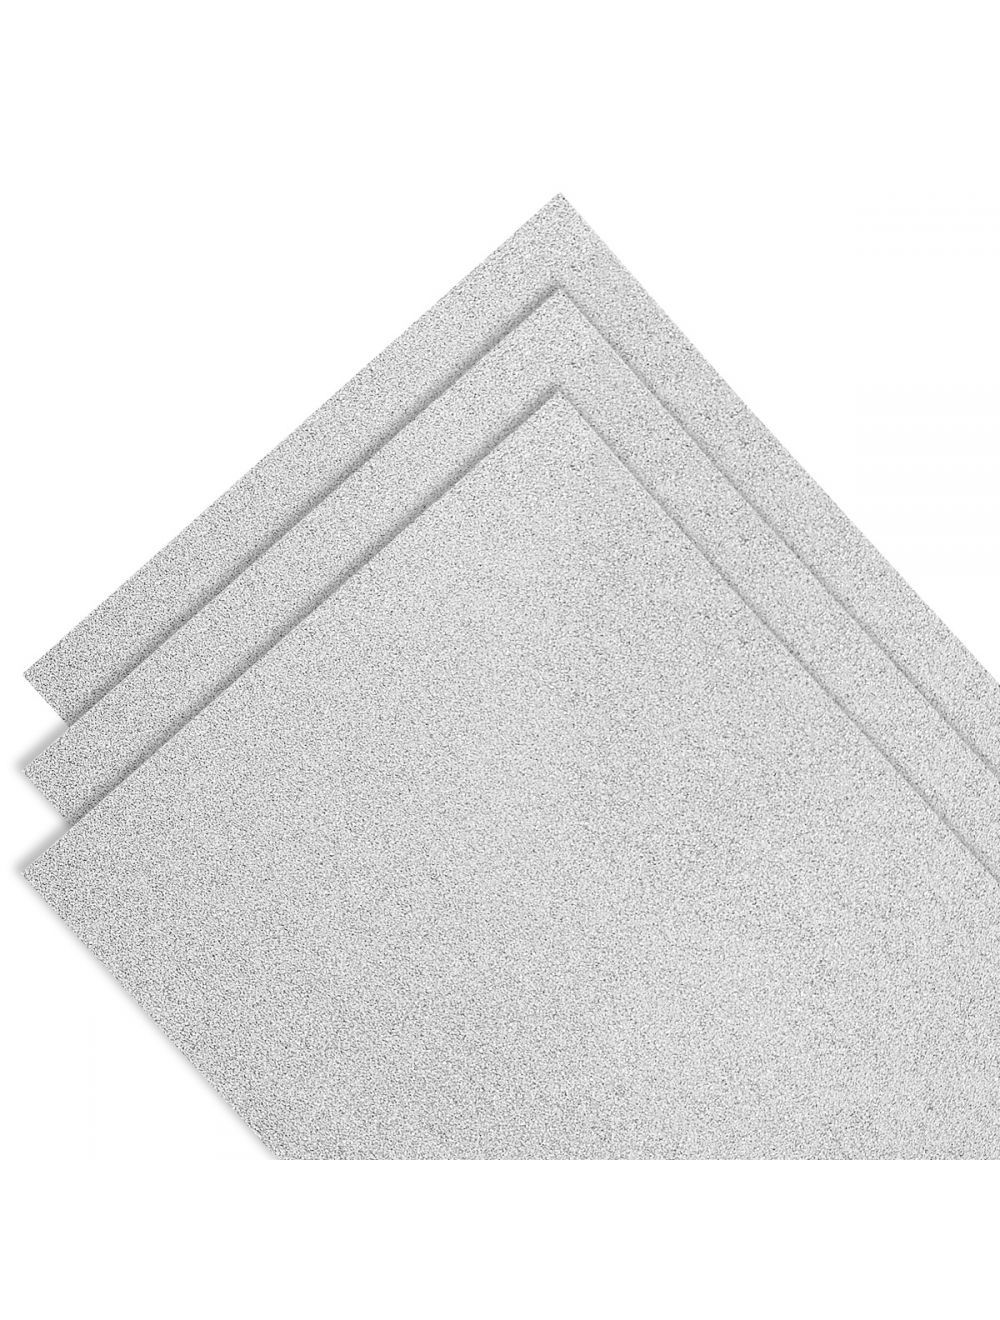 Vellum Paper - Pearled Silver - 8.5x11 (10/PK) - 100GSM - 9937E